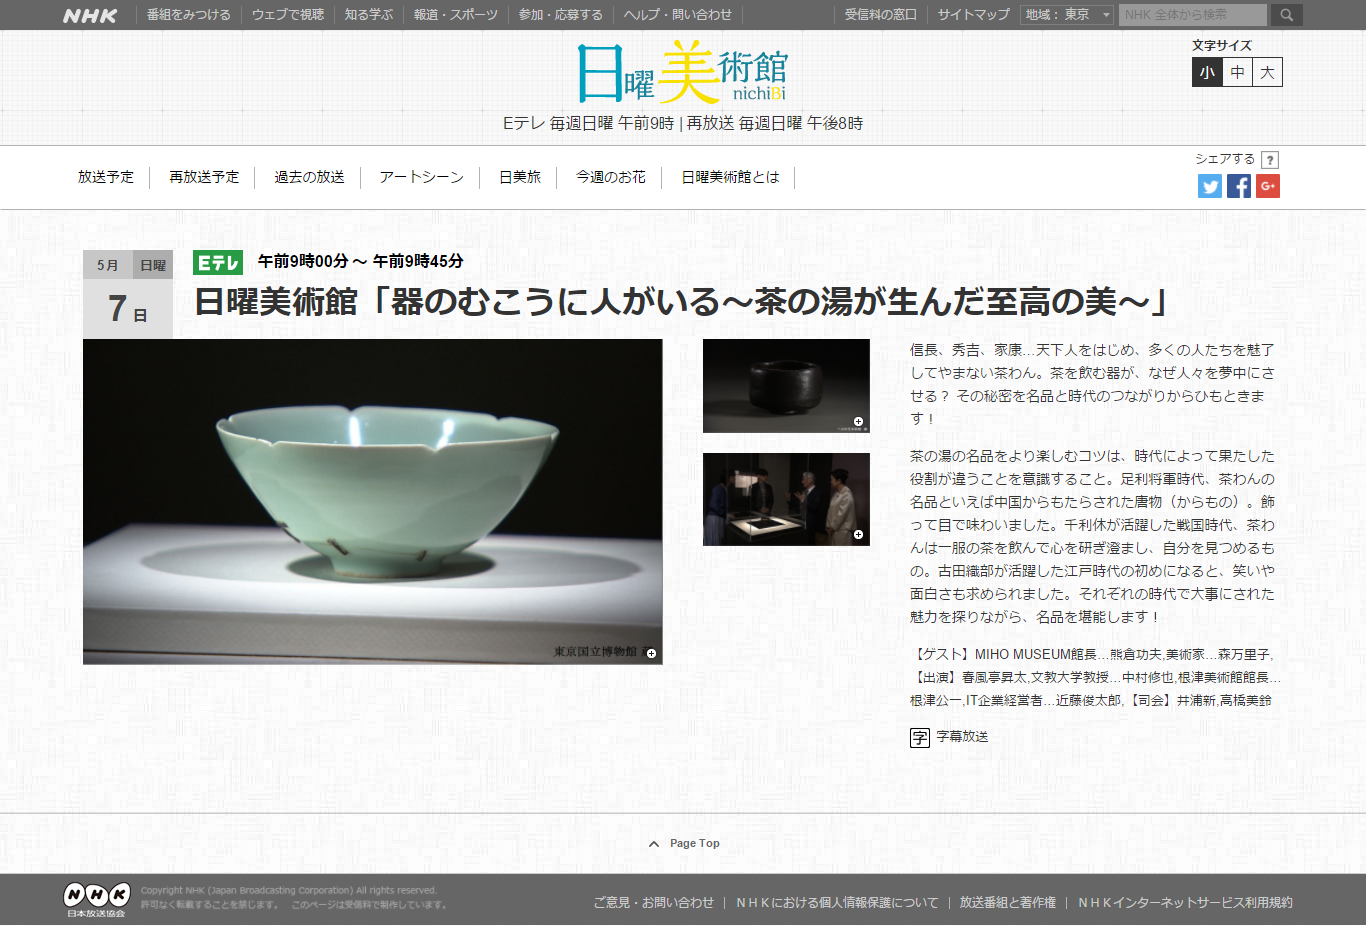 メディア掲載 Tv Nhk 日曜美術館 茶の湯が生んだ至高の美 アバンギャルド茶会 はじめての茶道 茶会を体験しよう